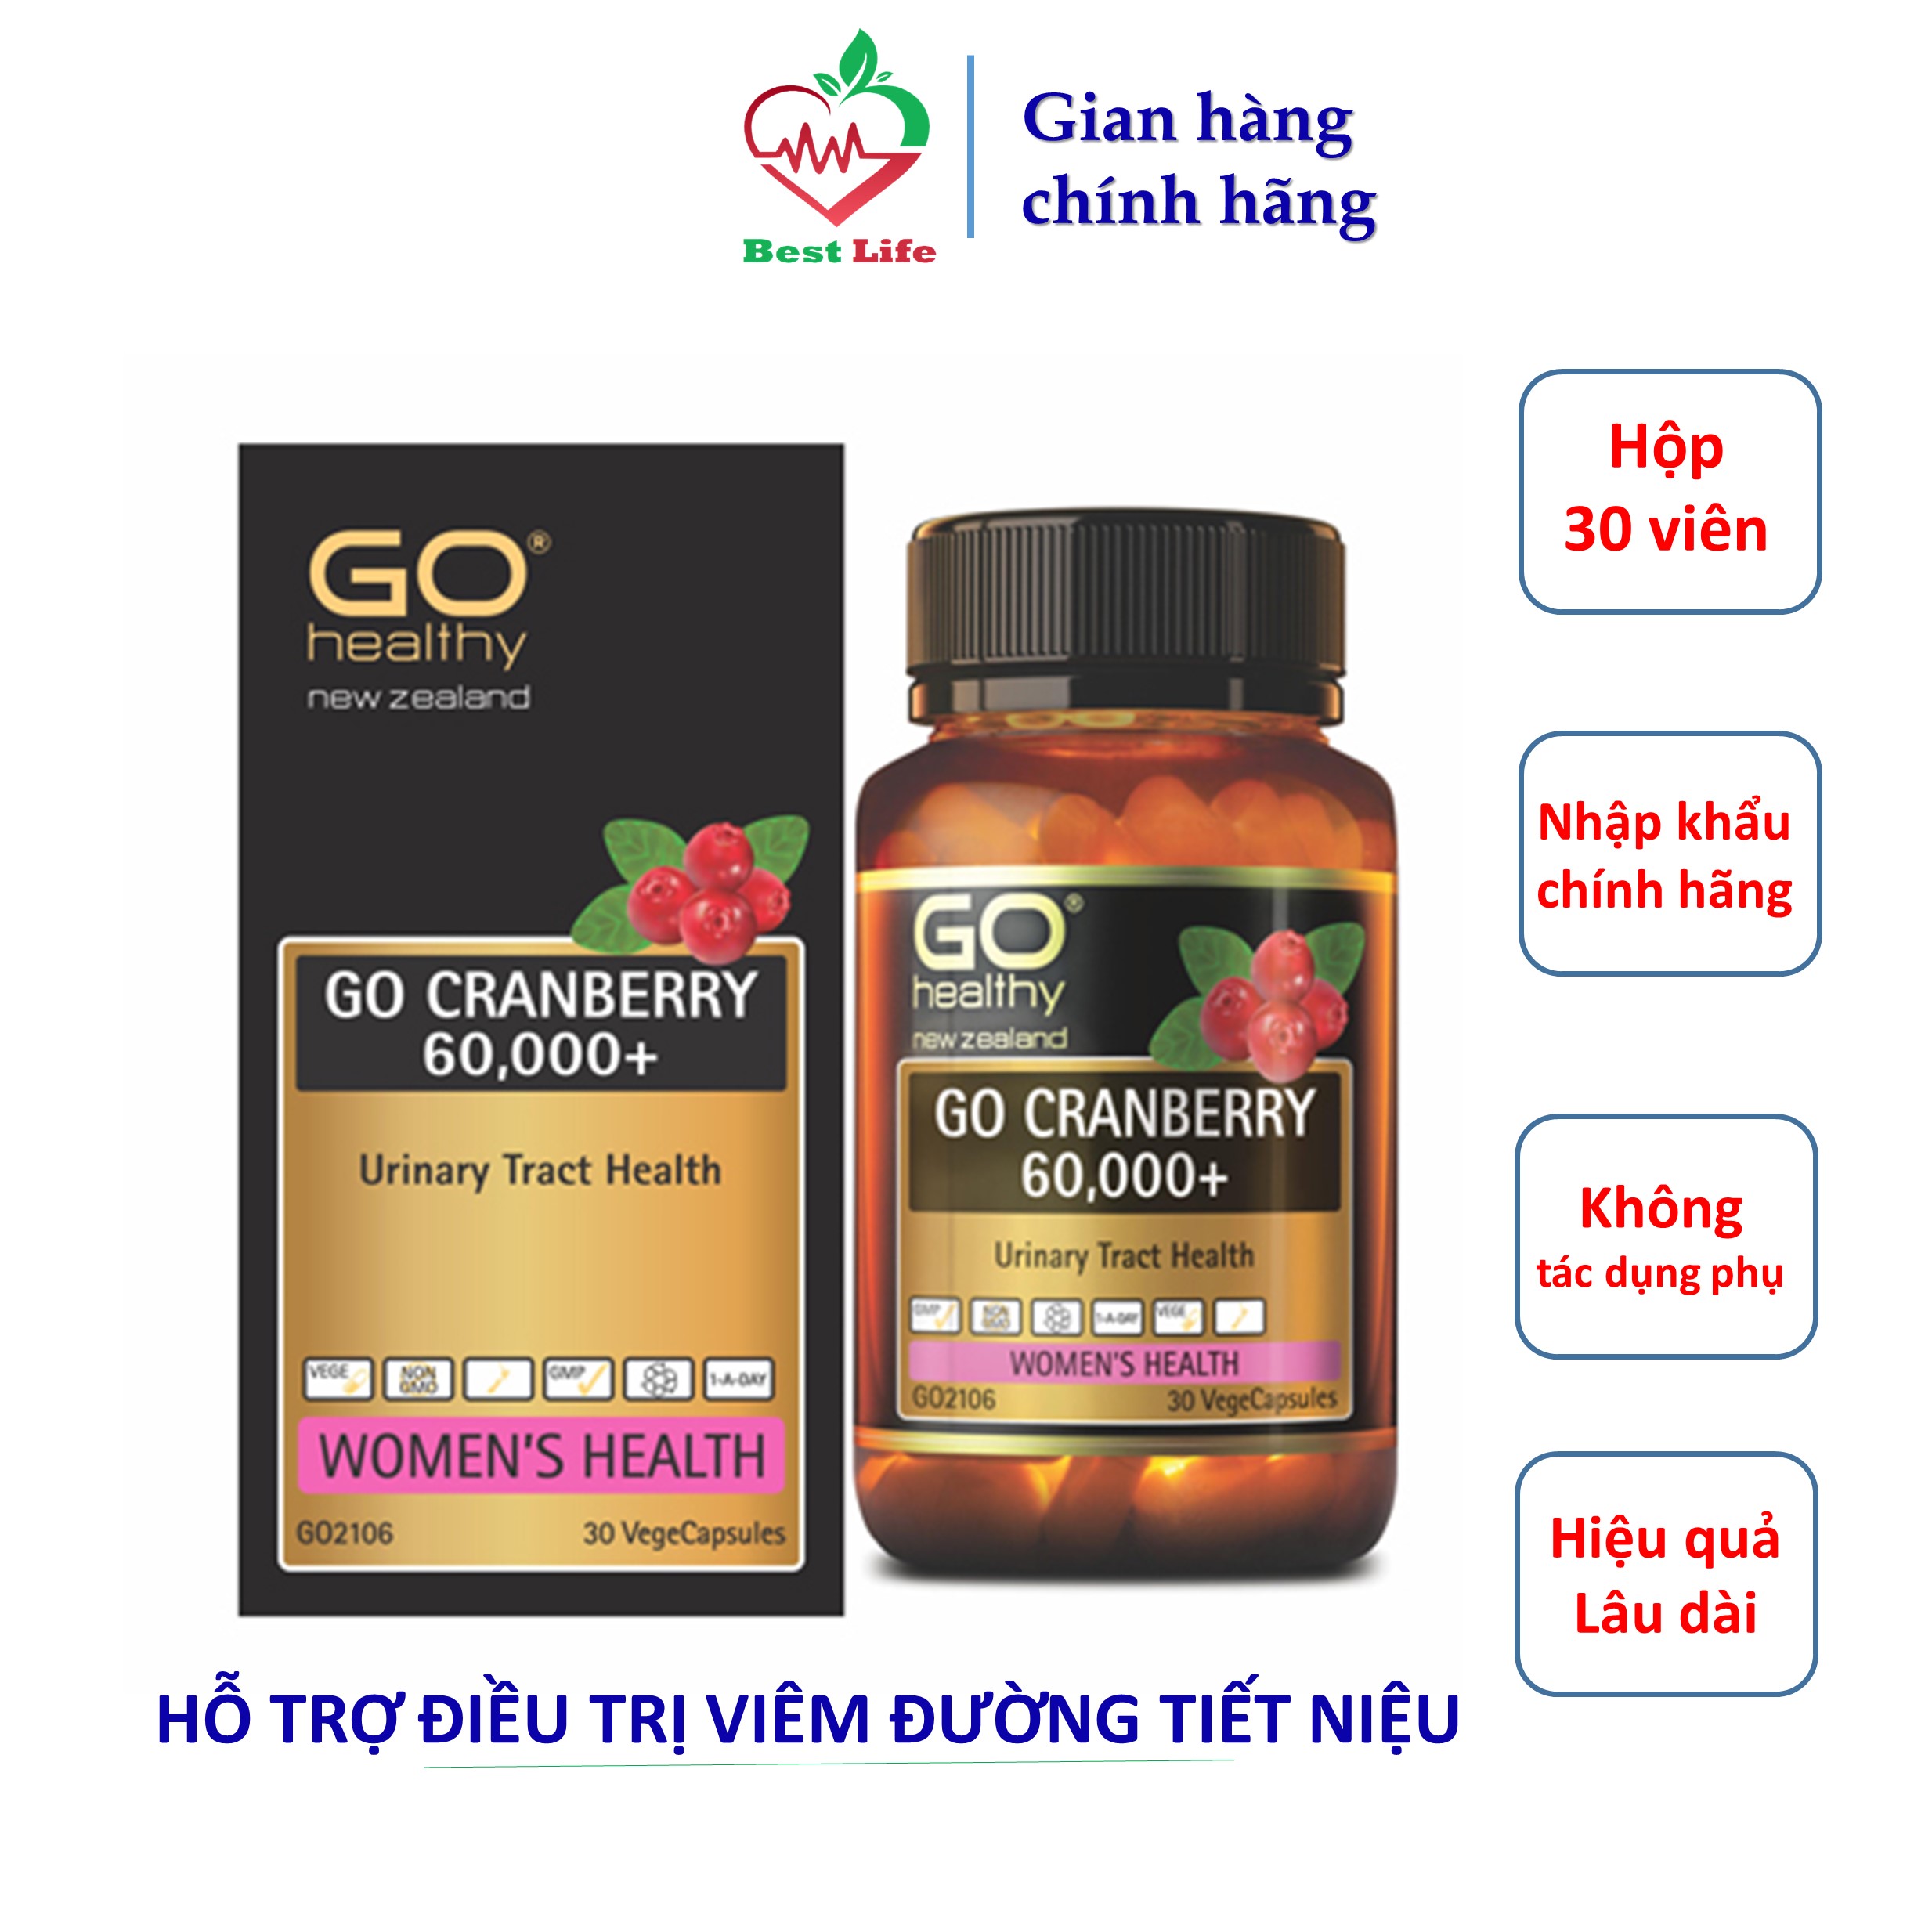 Go healthy GO CRANBERRY 60000+ Hỗ trợ điều trị viêm đường tiết niệu viêm